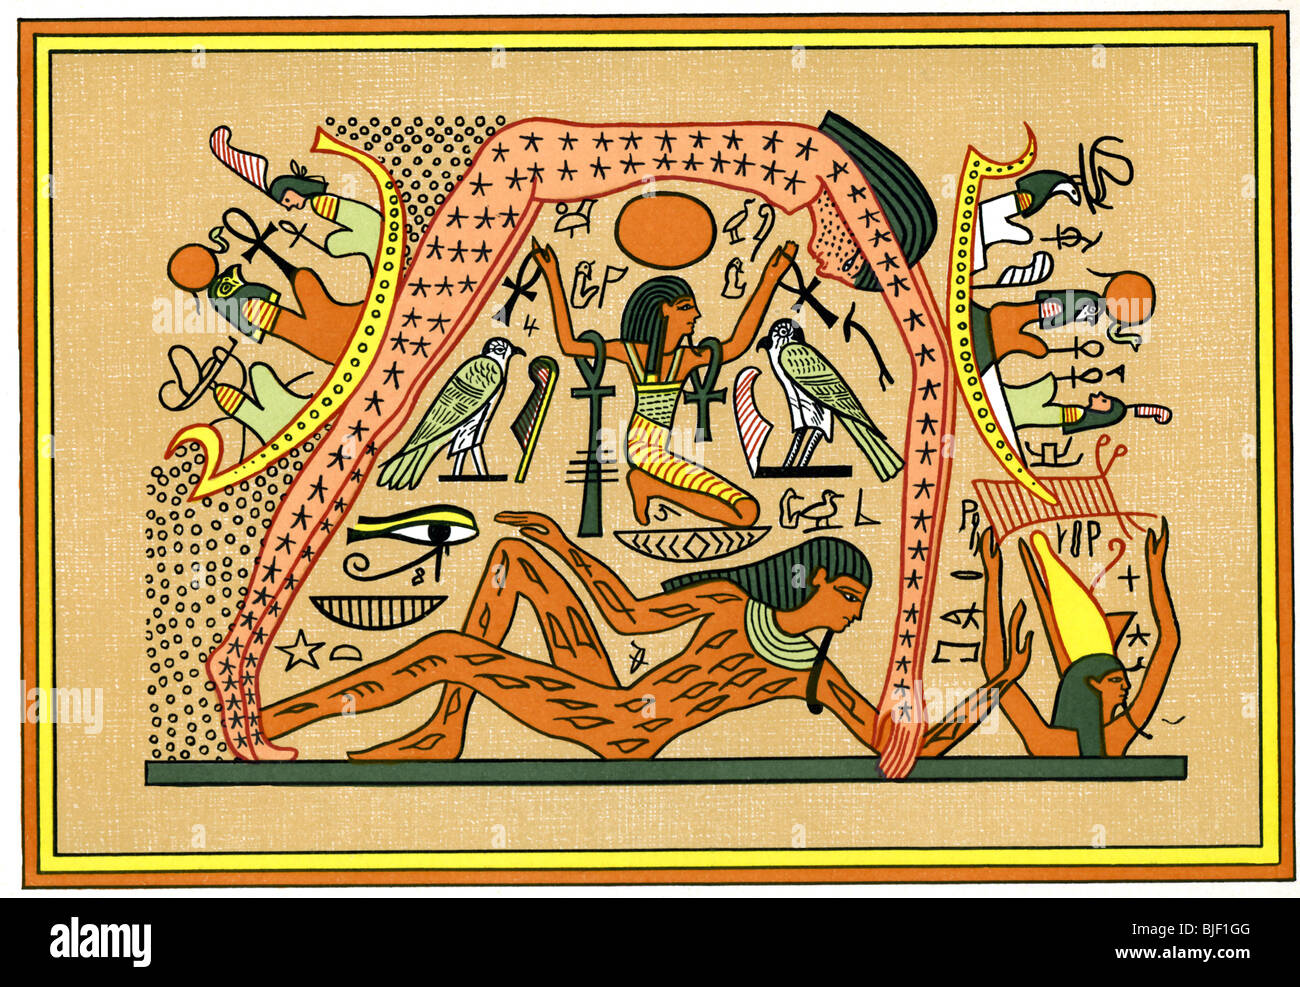 L'illustration montre Seb, un dieu de la terre, de l'écrou à l'appui, une déesse du ciel et de l'épouse de Seb. Banque D'Images